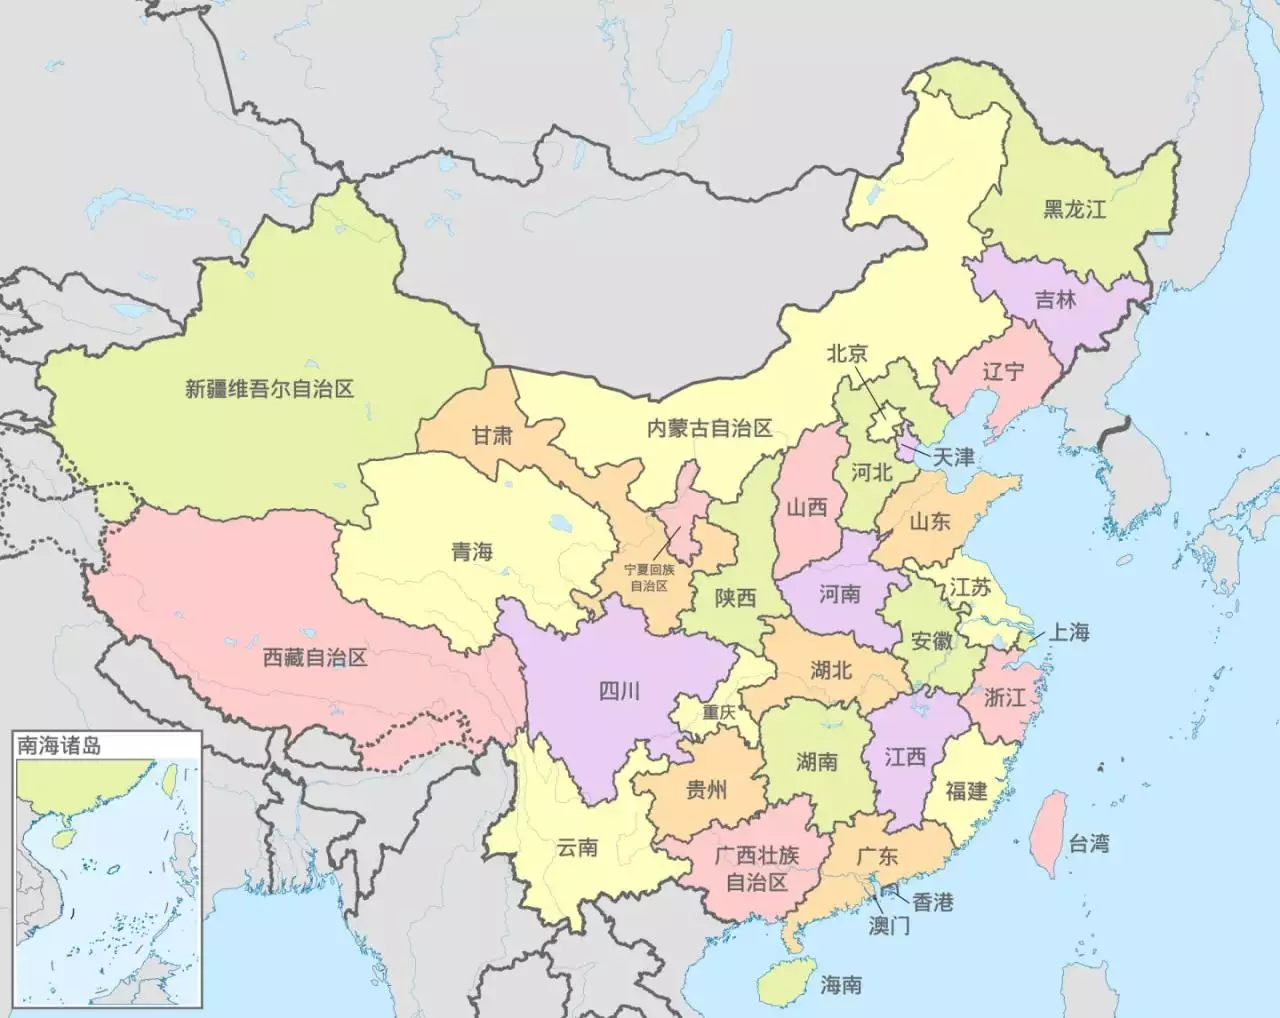 2、中国行政区划地图,各省名称和简称:中国地图 34个省级行政单位名称、简称、行政中心